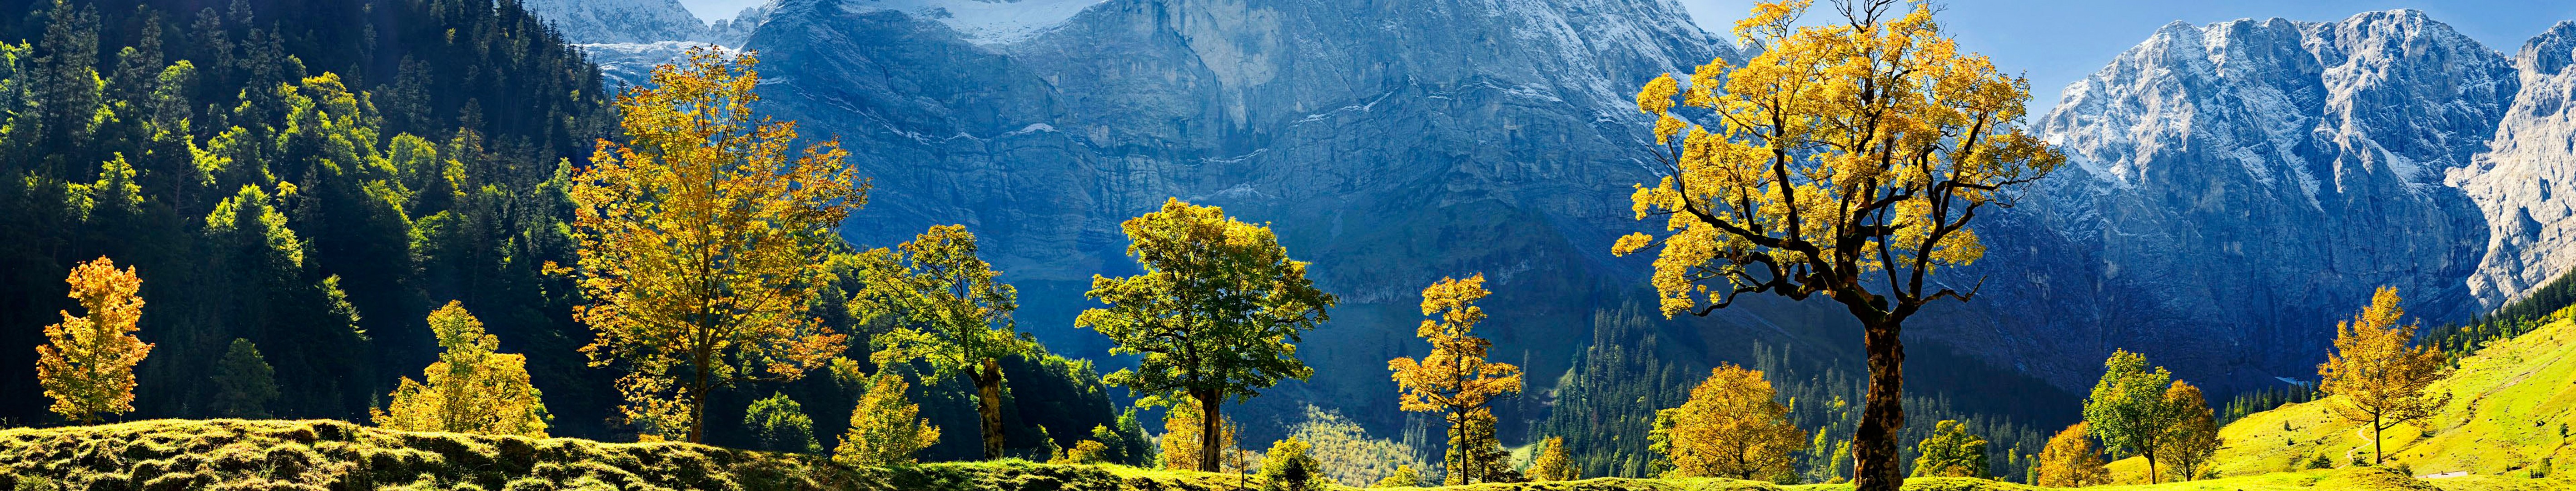 746911 скачать обои фотографии, панорама, австрия, европа, зеленый, гора, дерево - заставки и картинки бесплатно